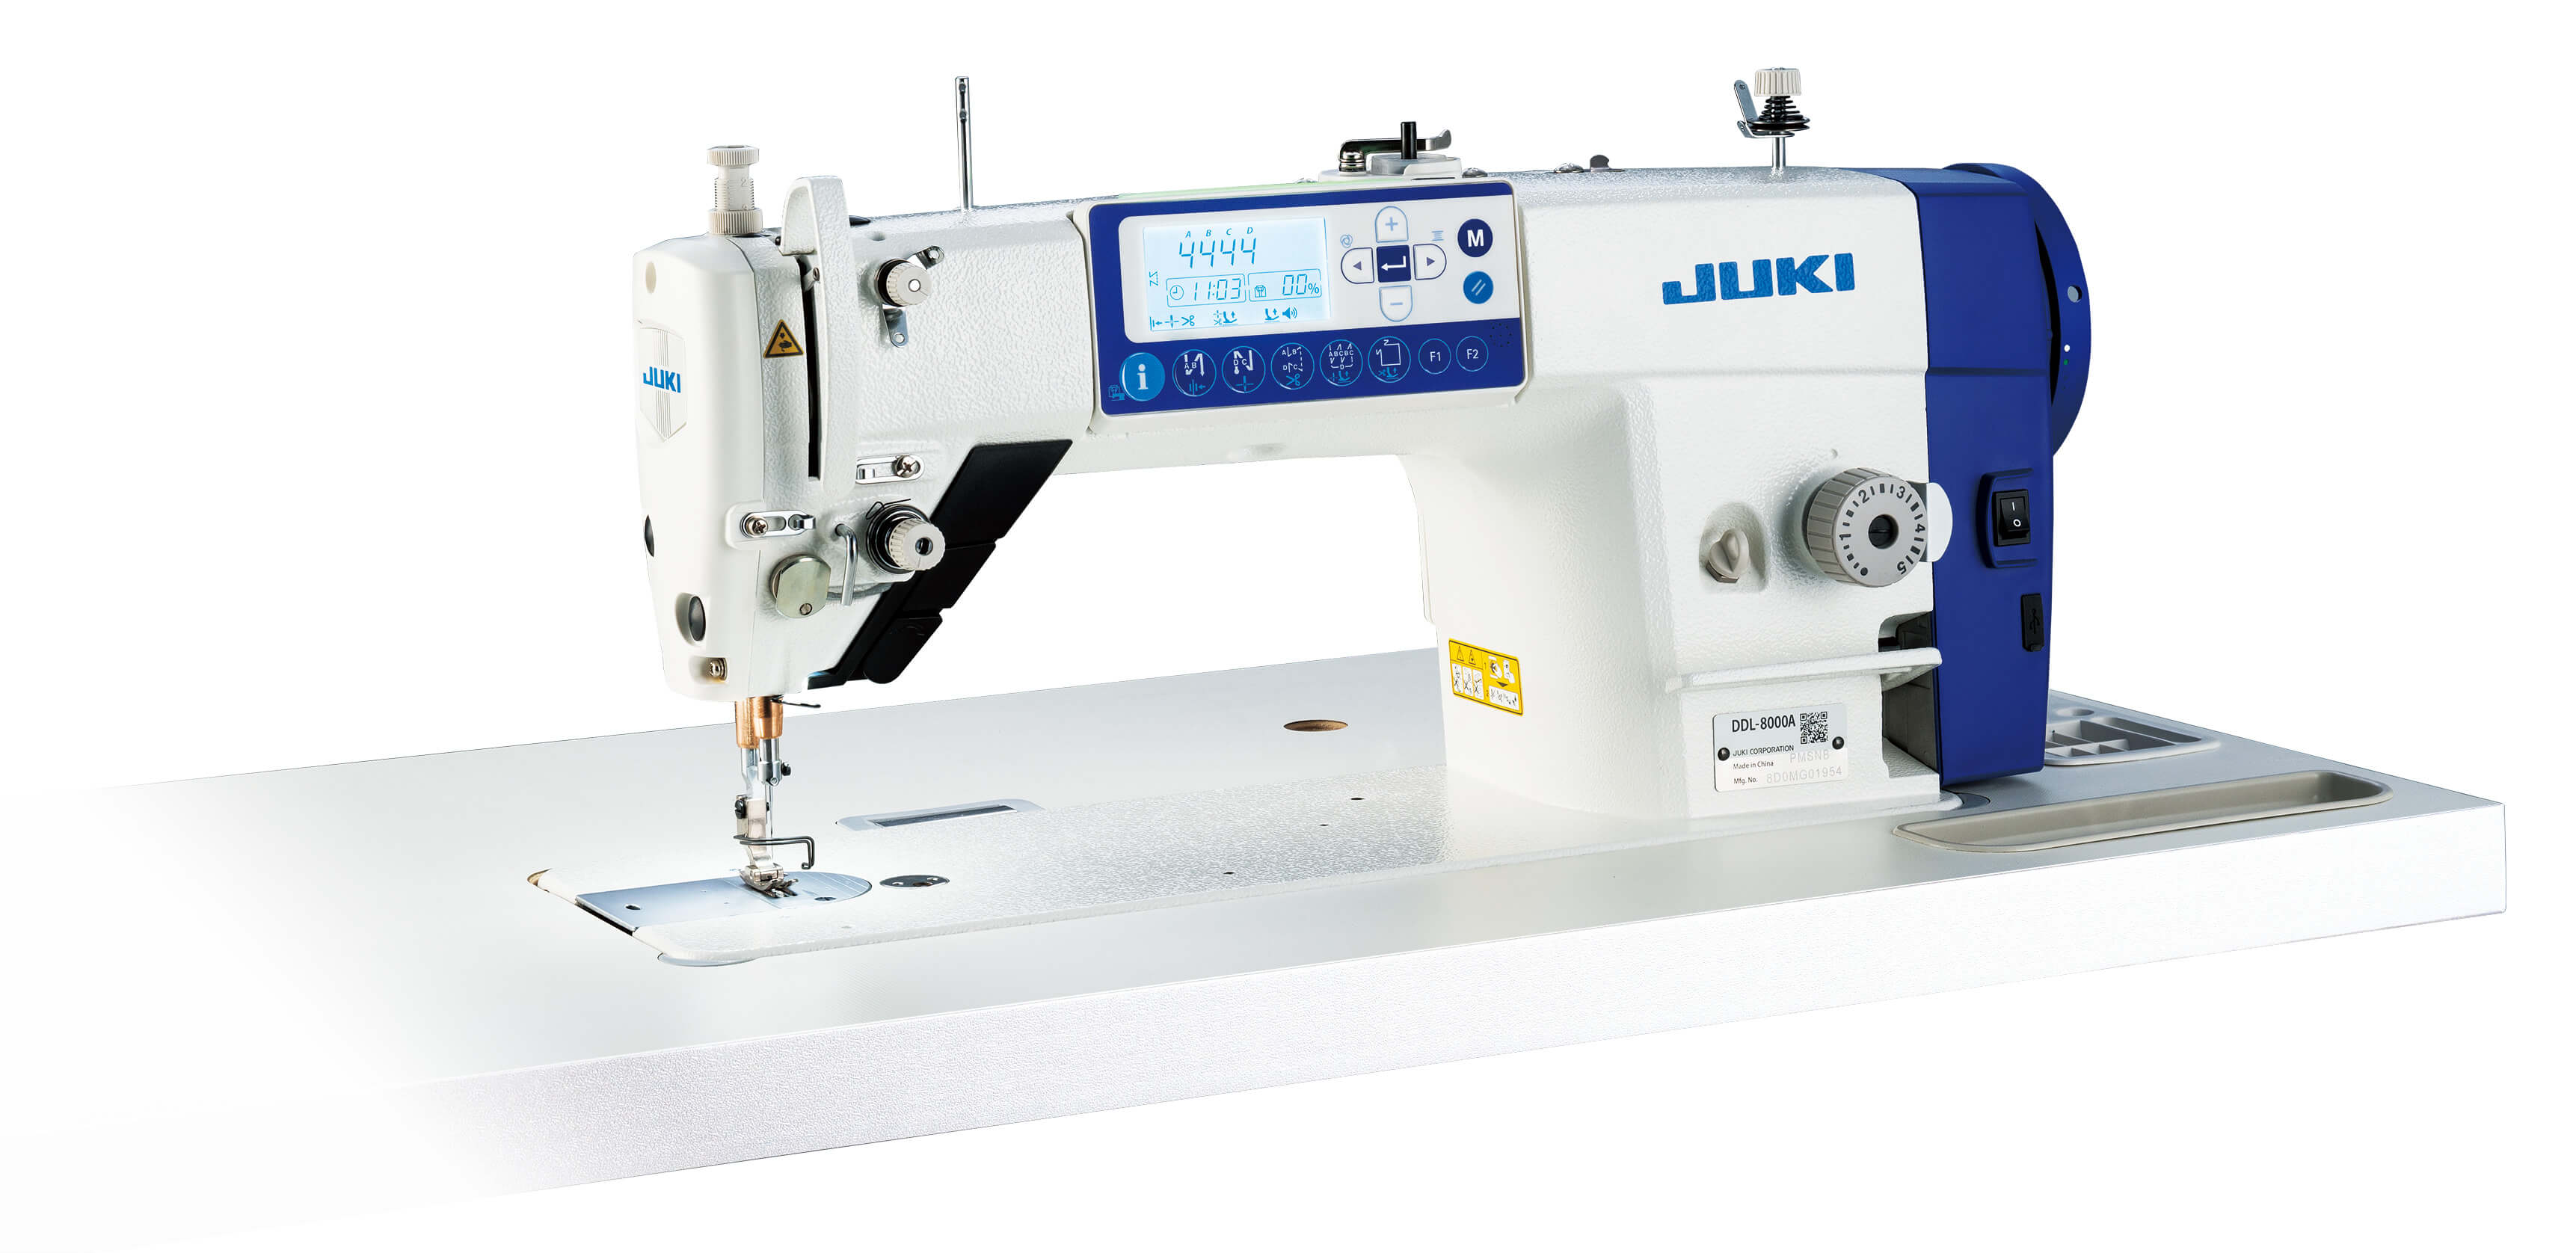 Купить швейную машинку juki. Швейная машинка Промышленная Juki. Juki DDL-8000ap-sh. Промышленная швейная машинка Jumi. Швейная машина Juki DDL 8000a.